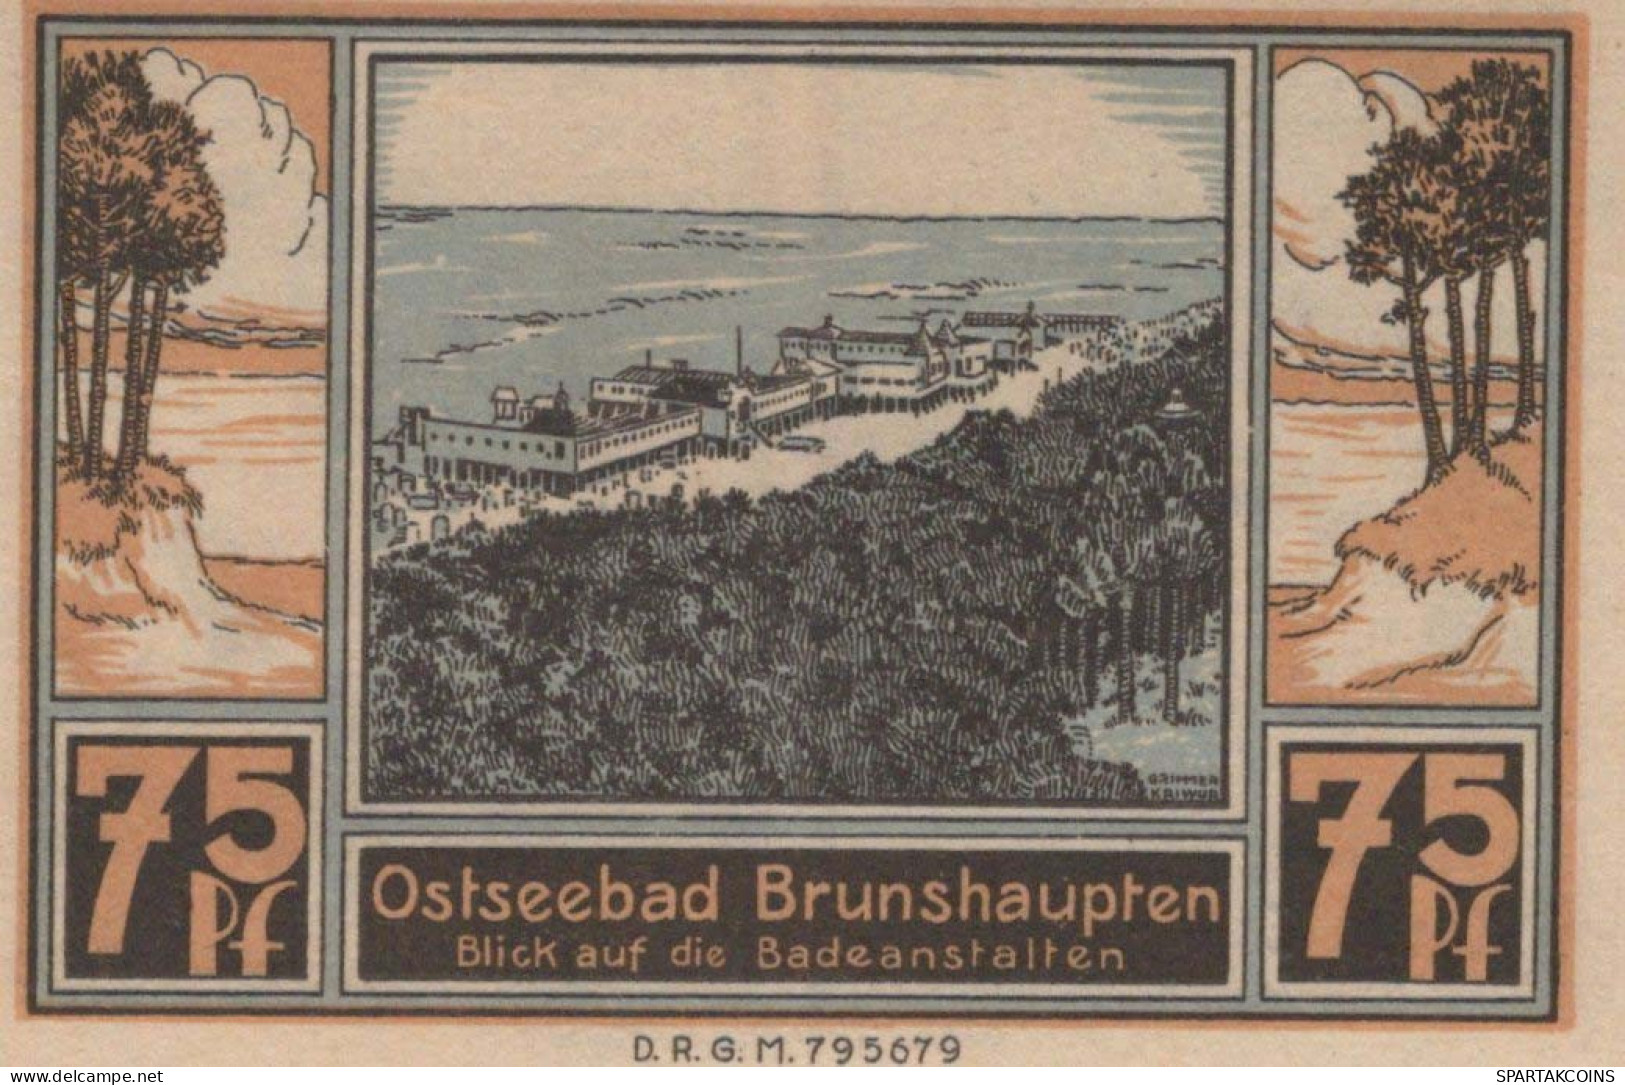 75 PFENNIG 1914-1924 BRUNSHAUPTEN Mecklenburg-Schwerin UNC DEUTSCHLAND #PC846 - Lokale Ausgaben